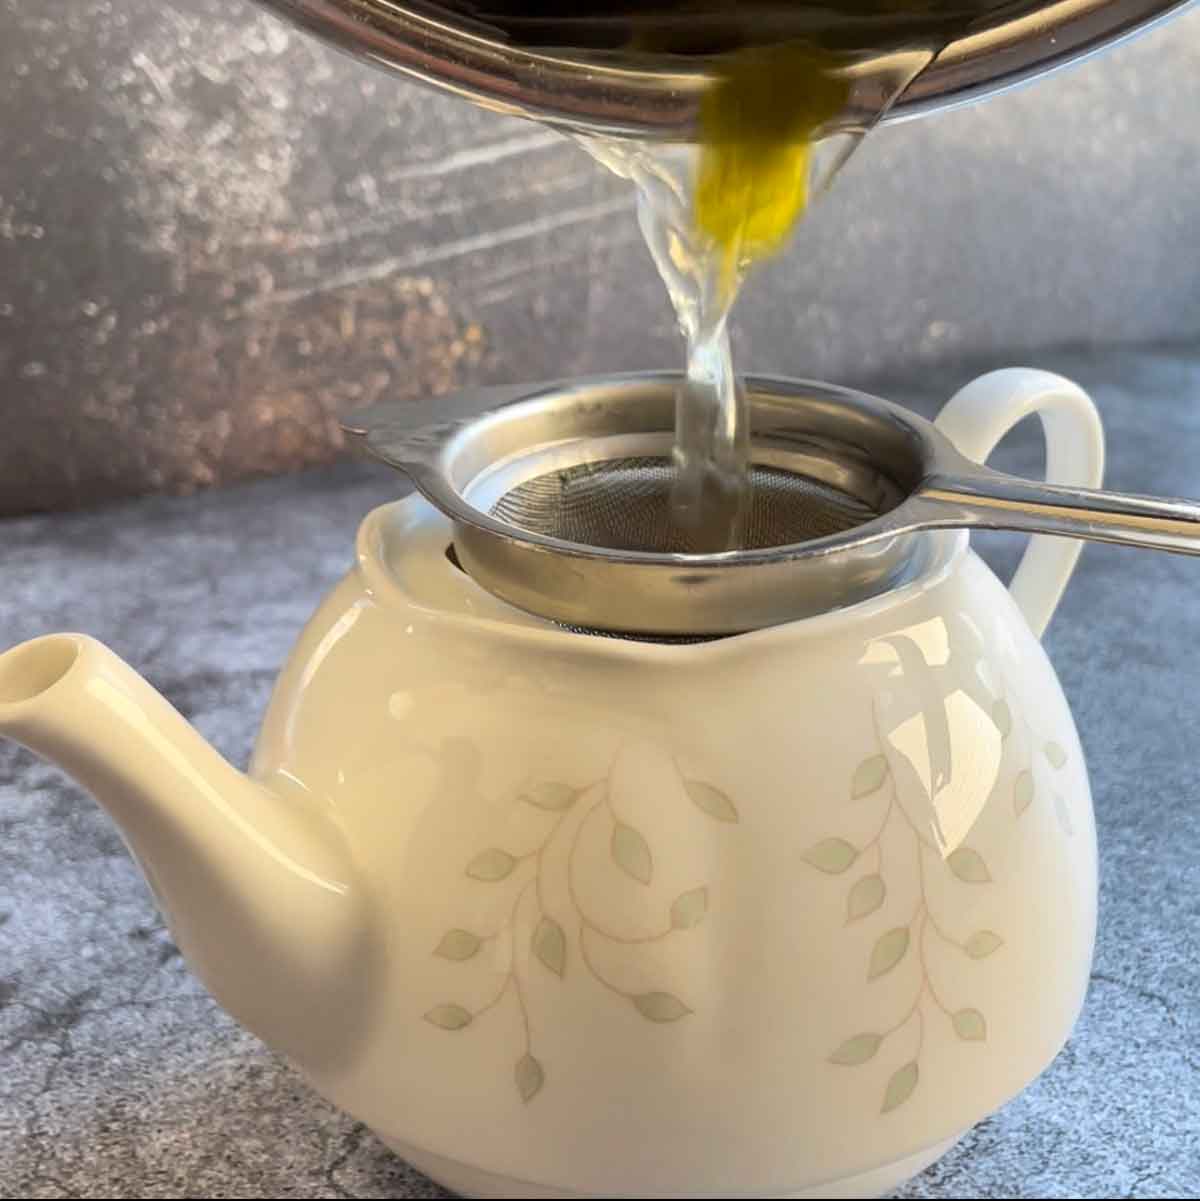 Filtering lemongrass in a tea pot.